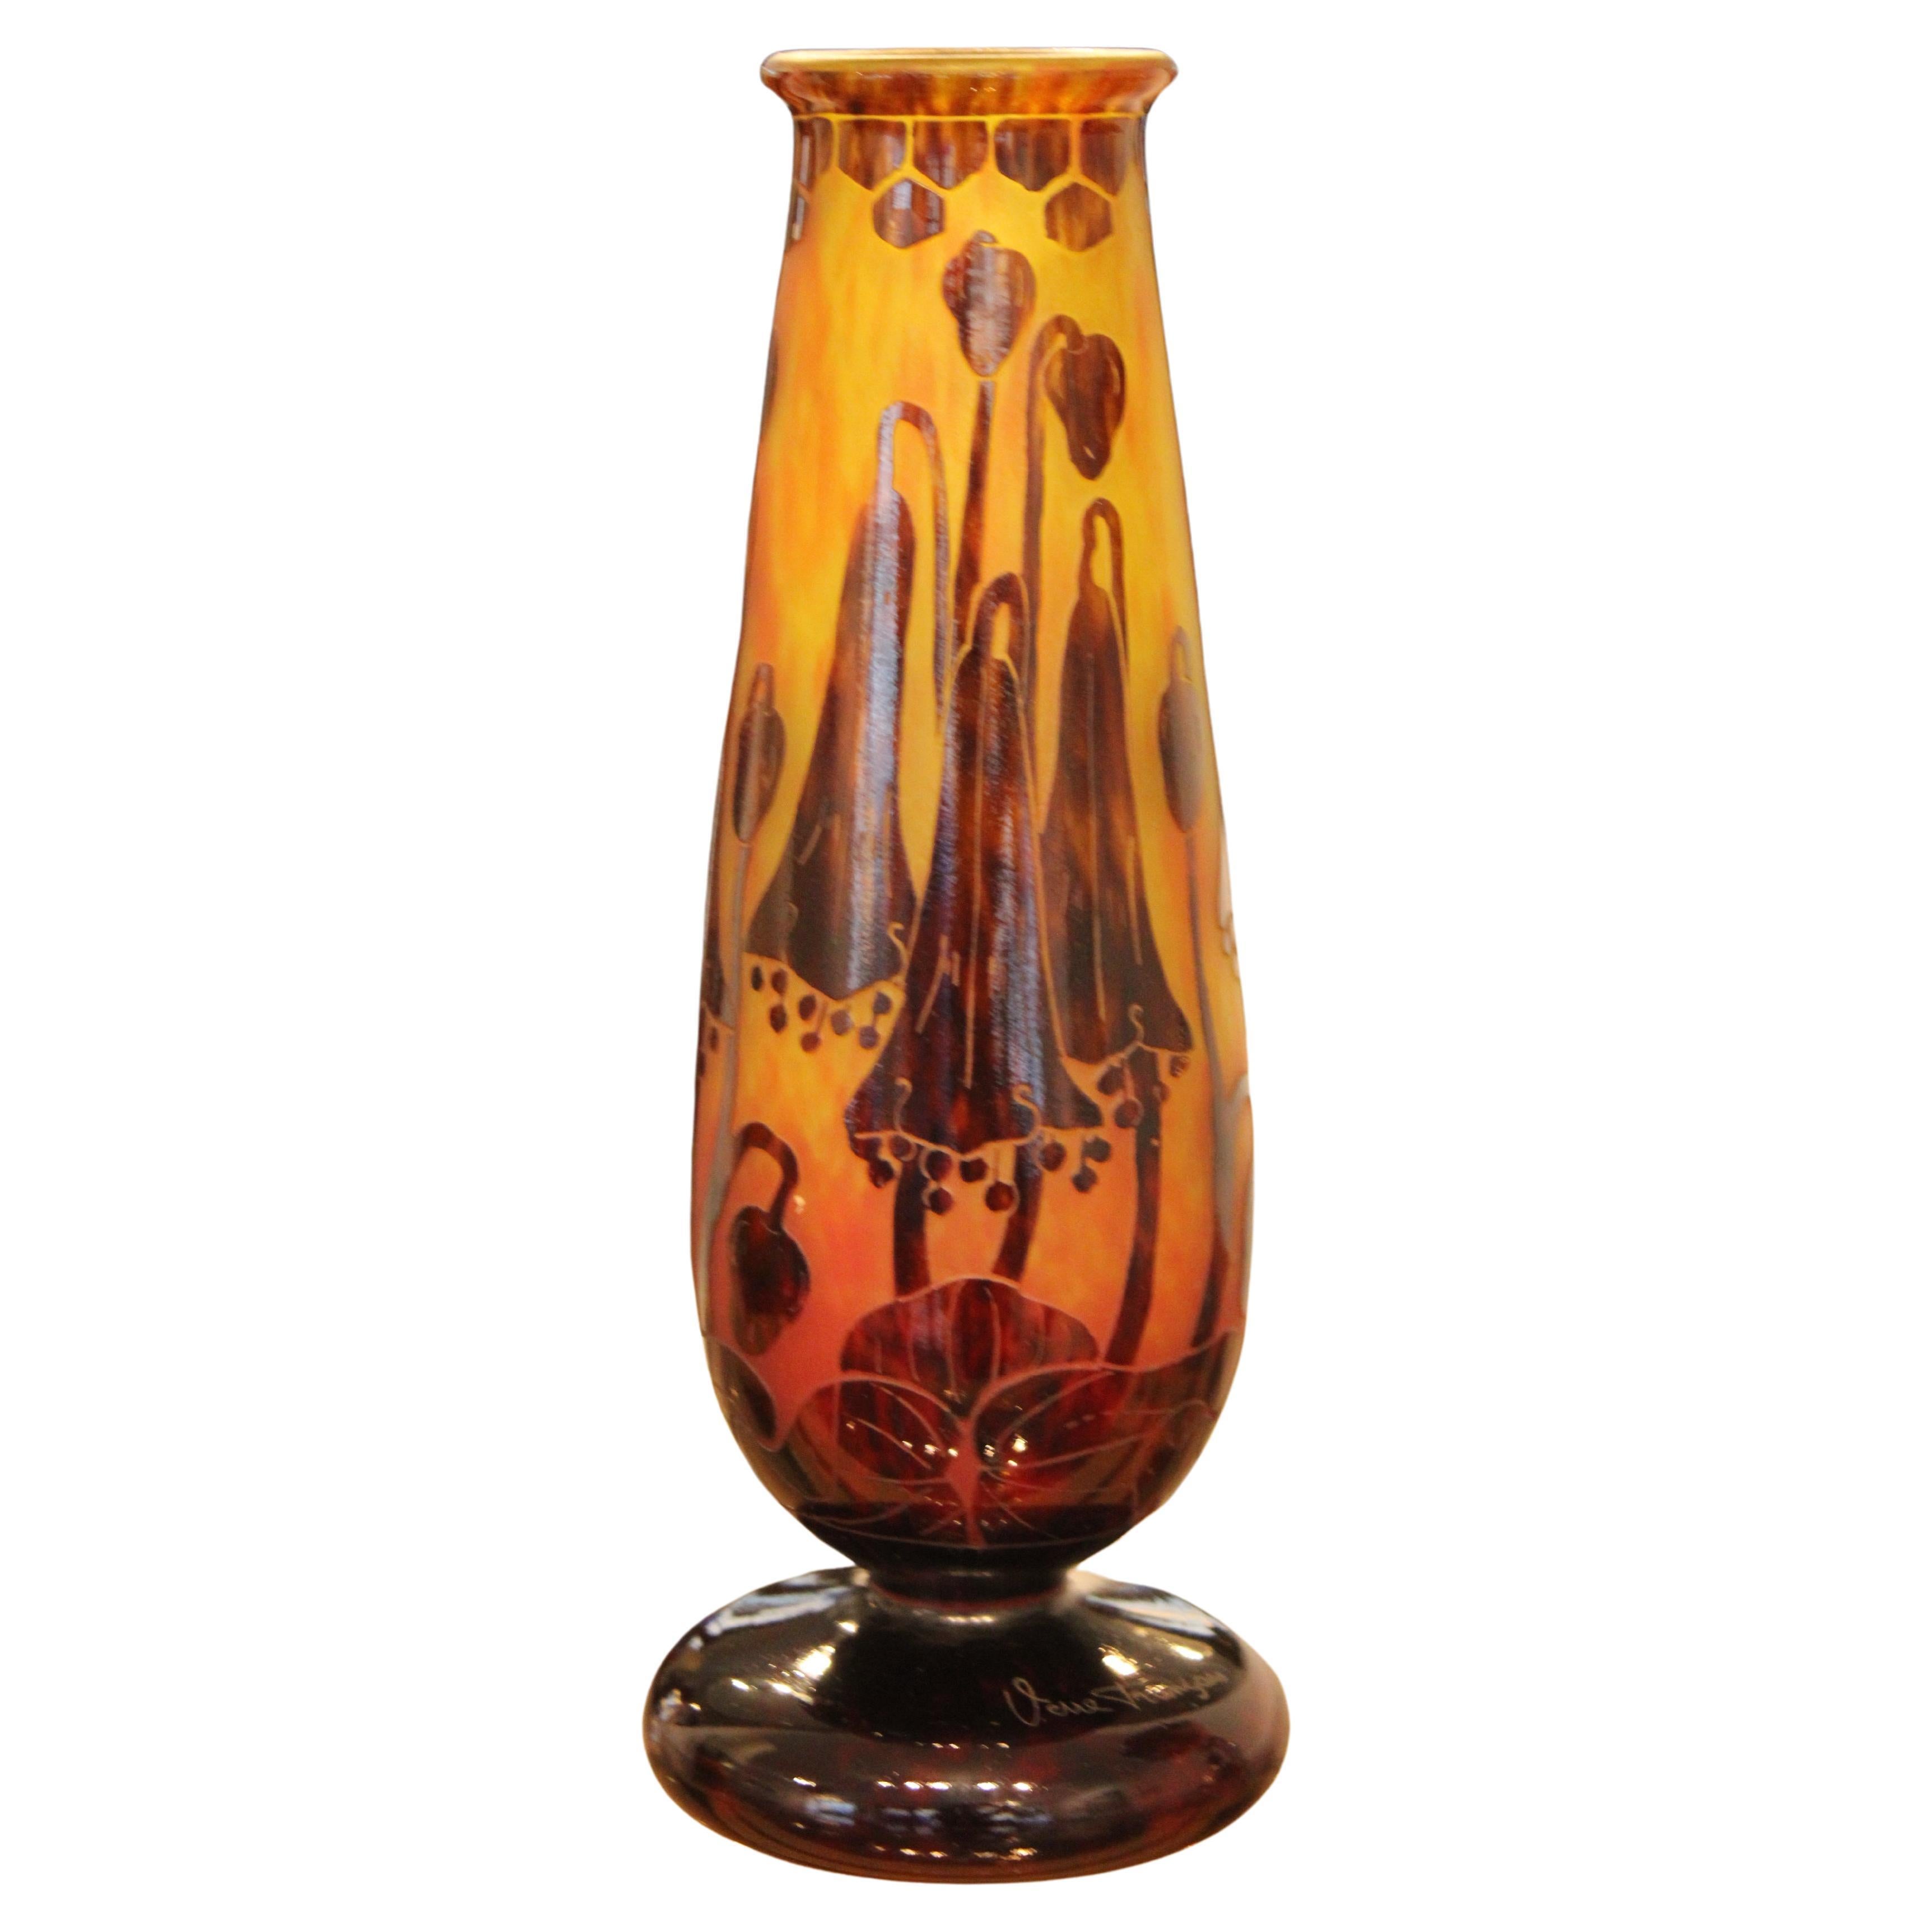 Vase, "Le verre français" France, 20th century